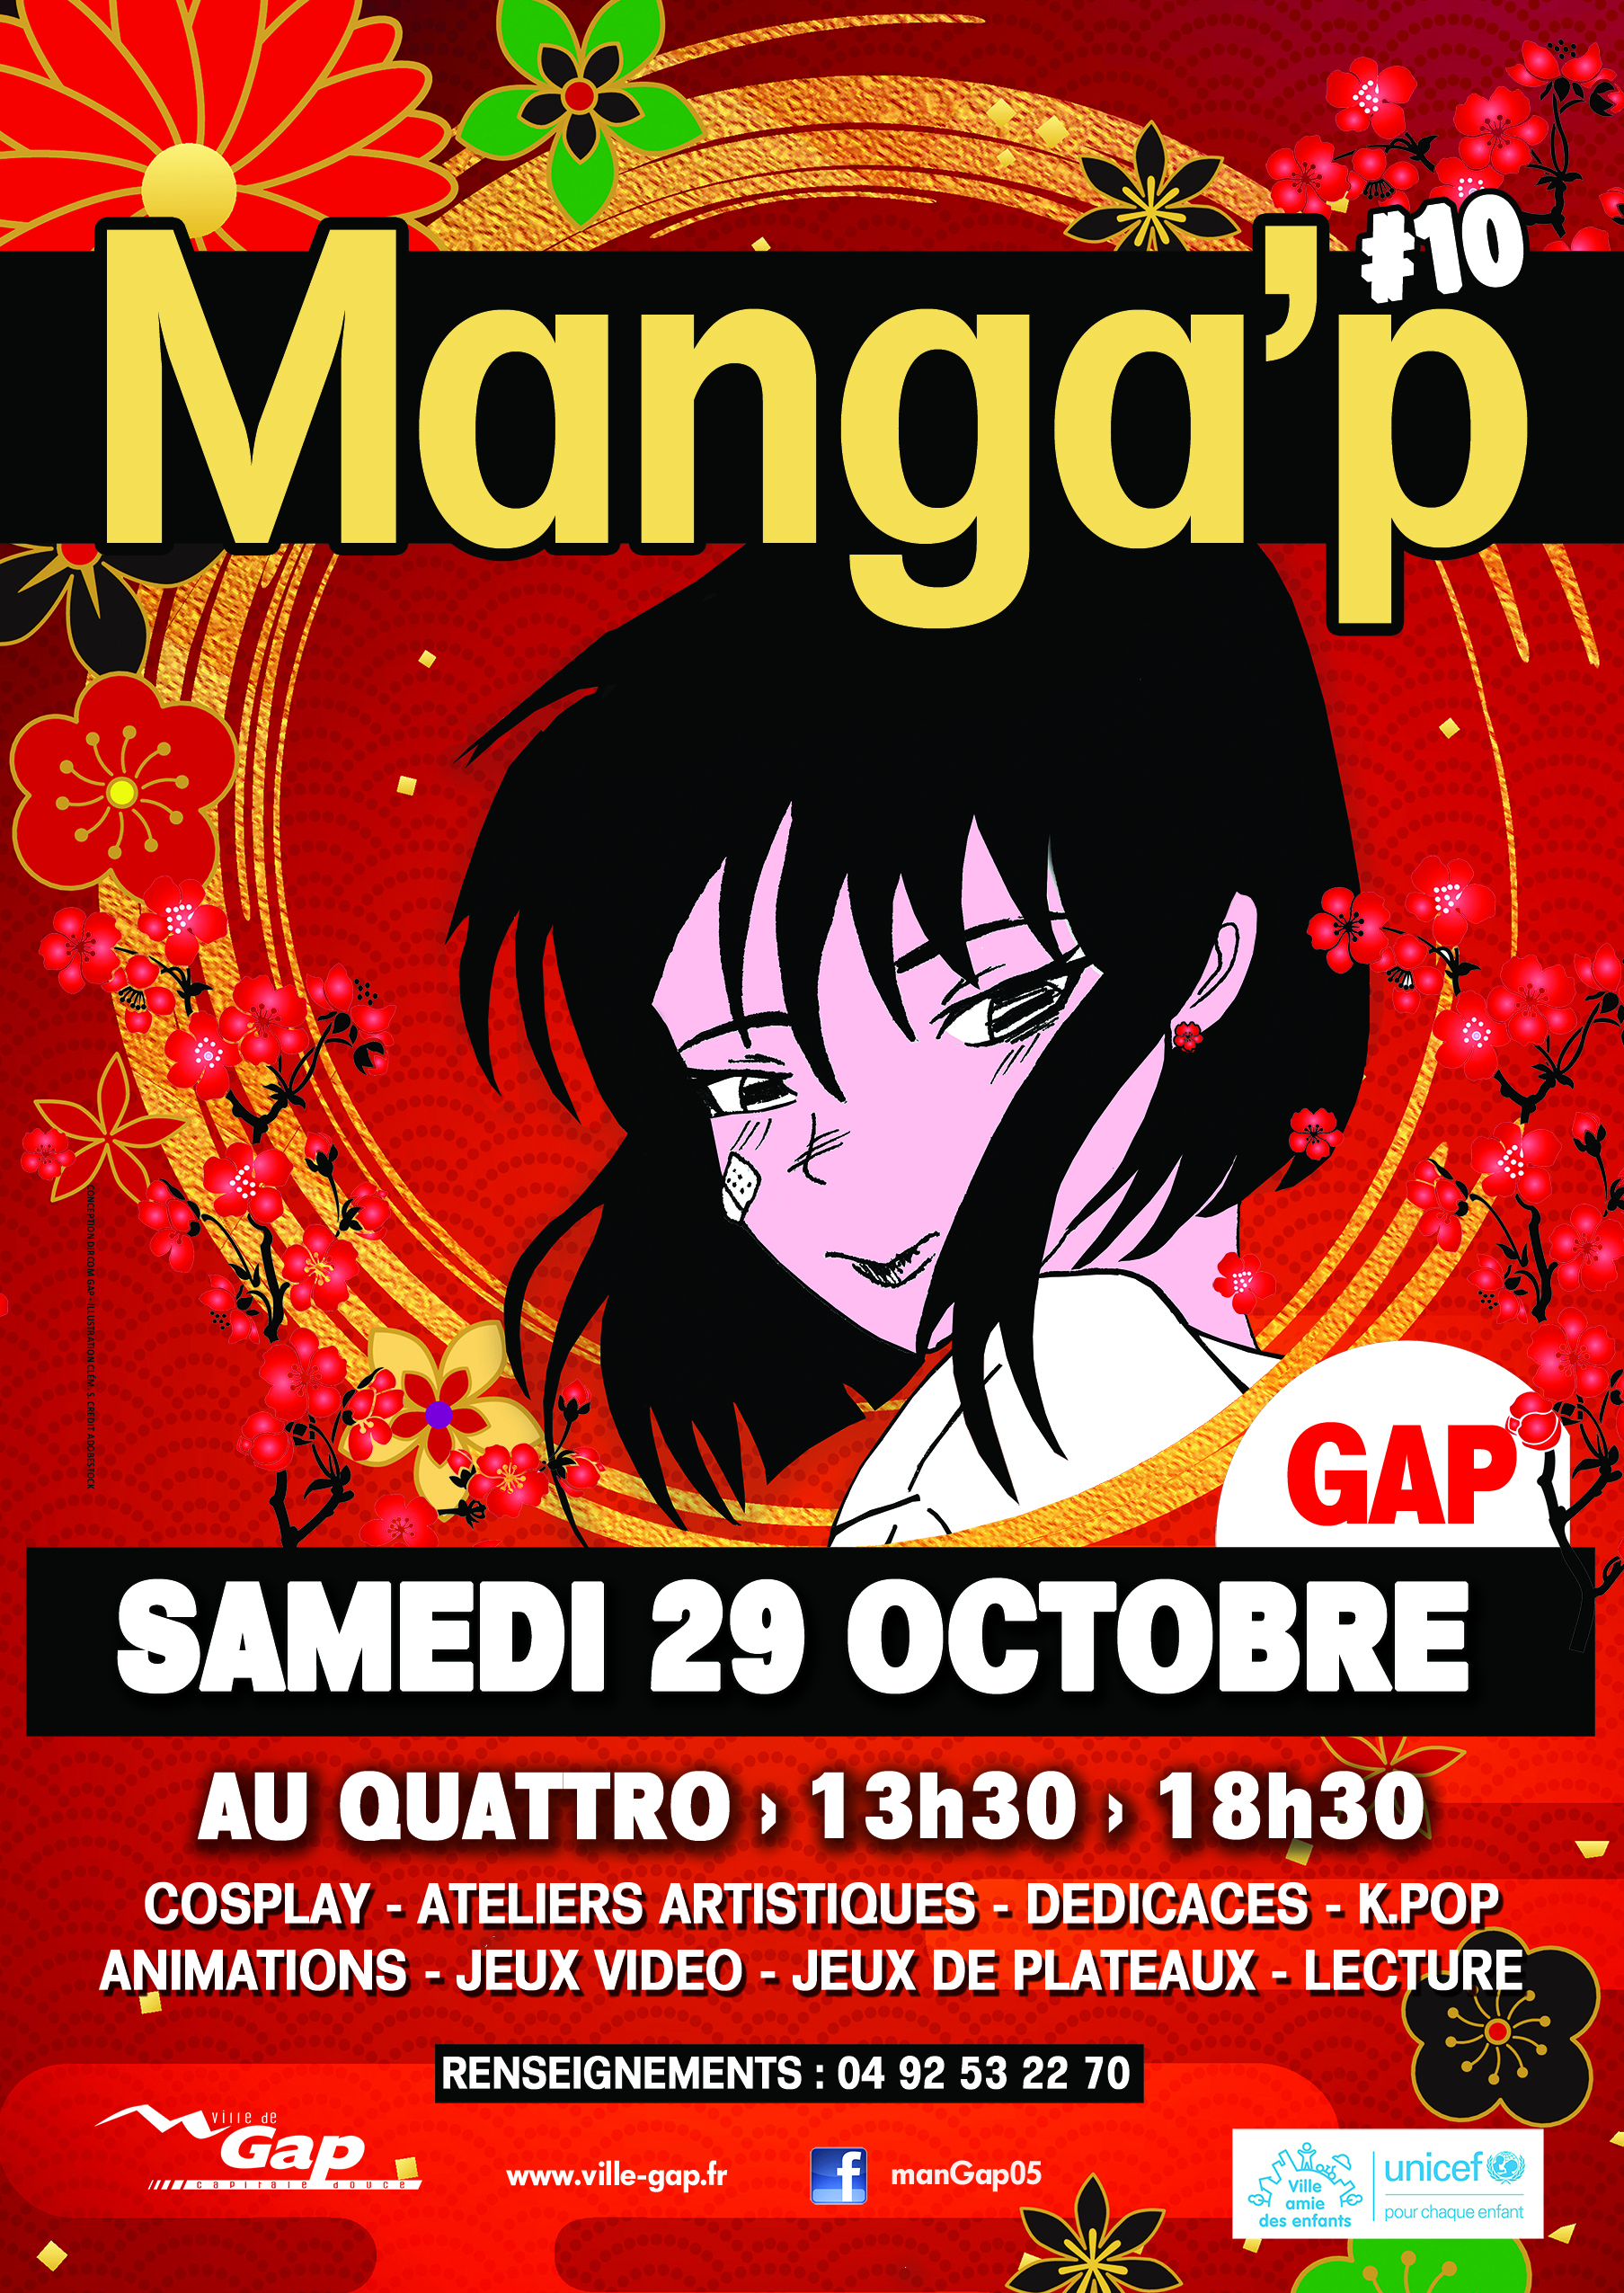 Manga'p le 23 octobre 2022 au Quattro à Gap de 13h30 à 18h30